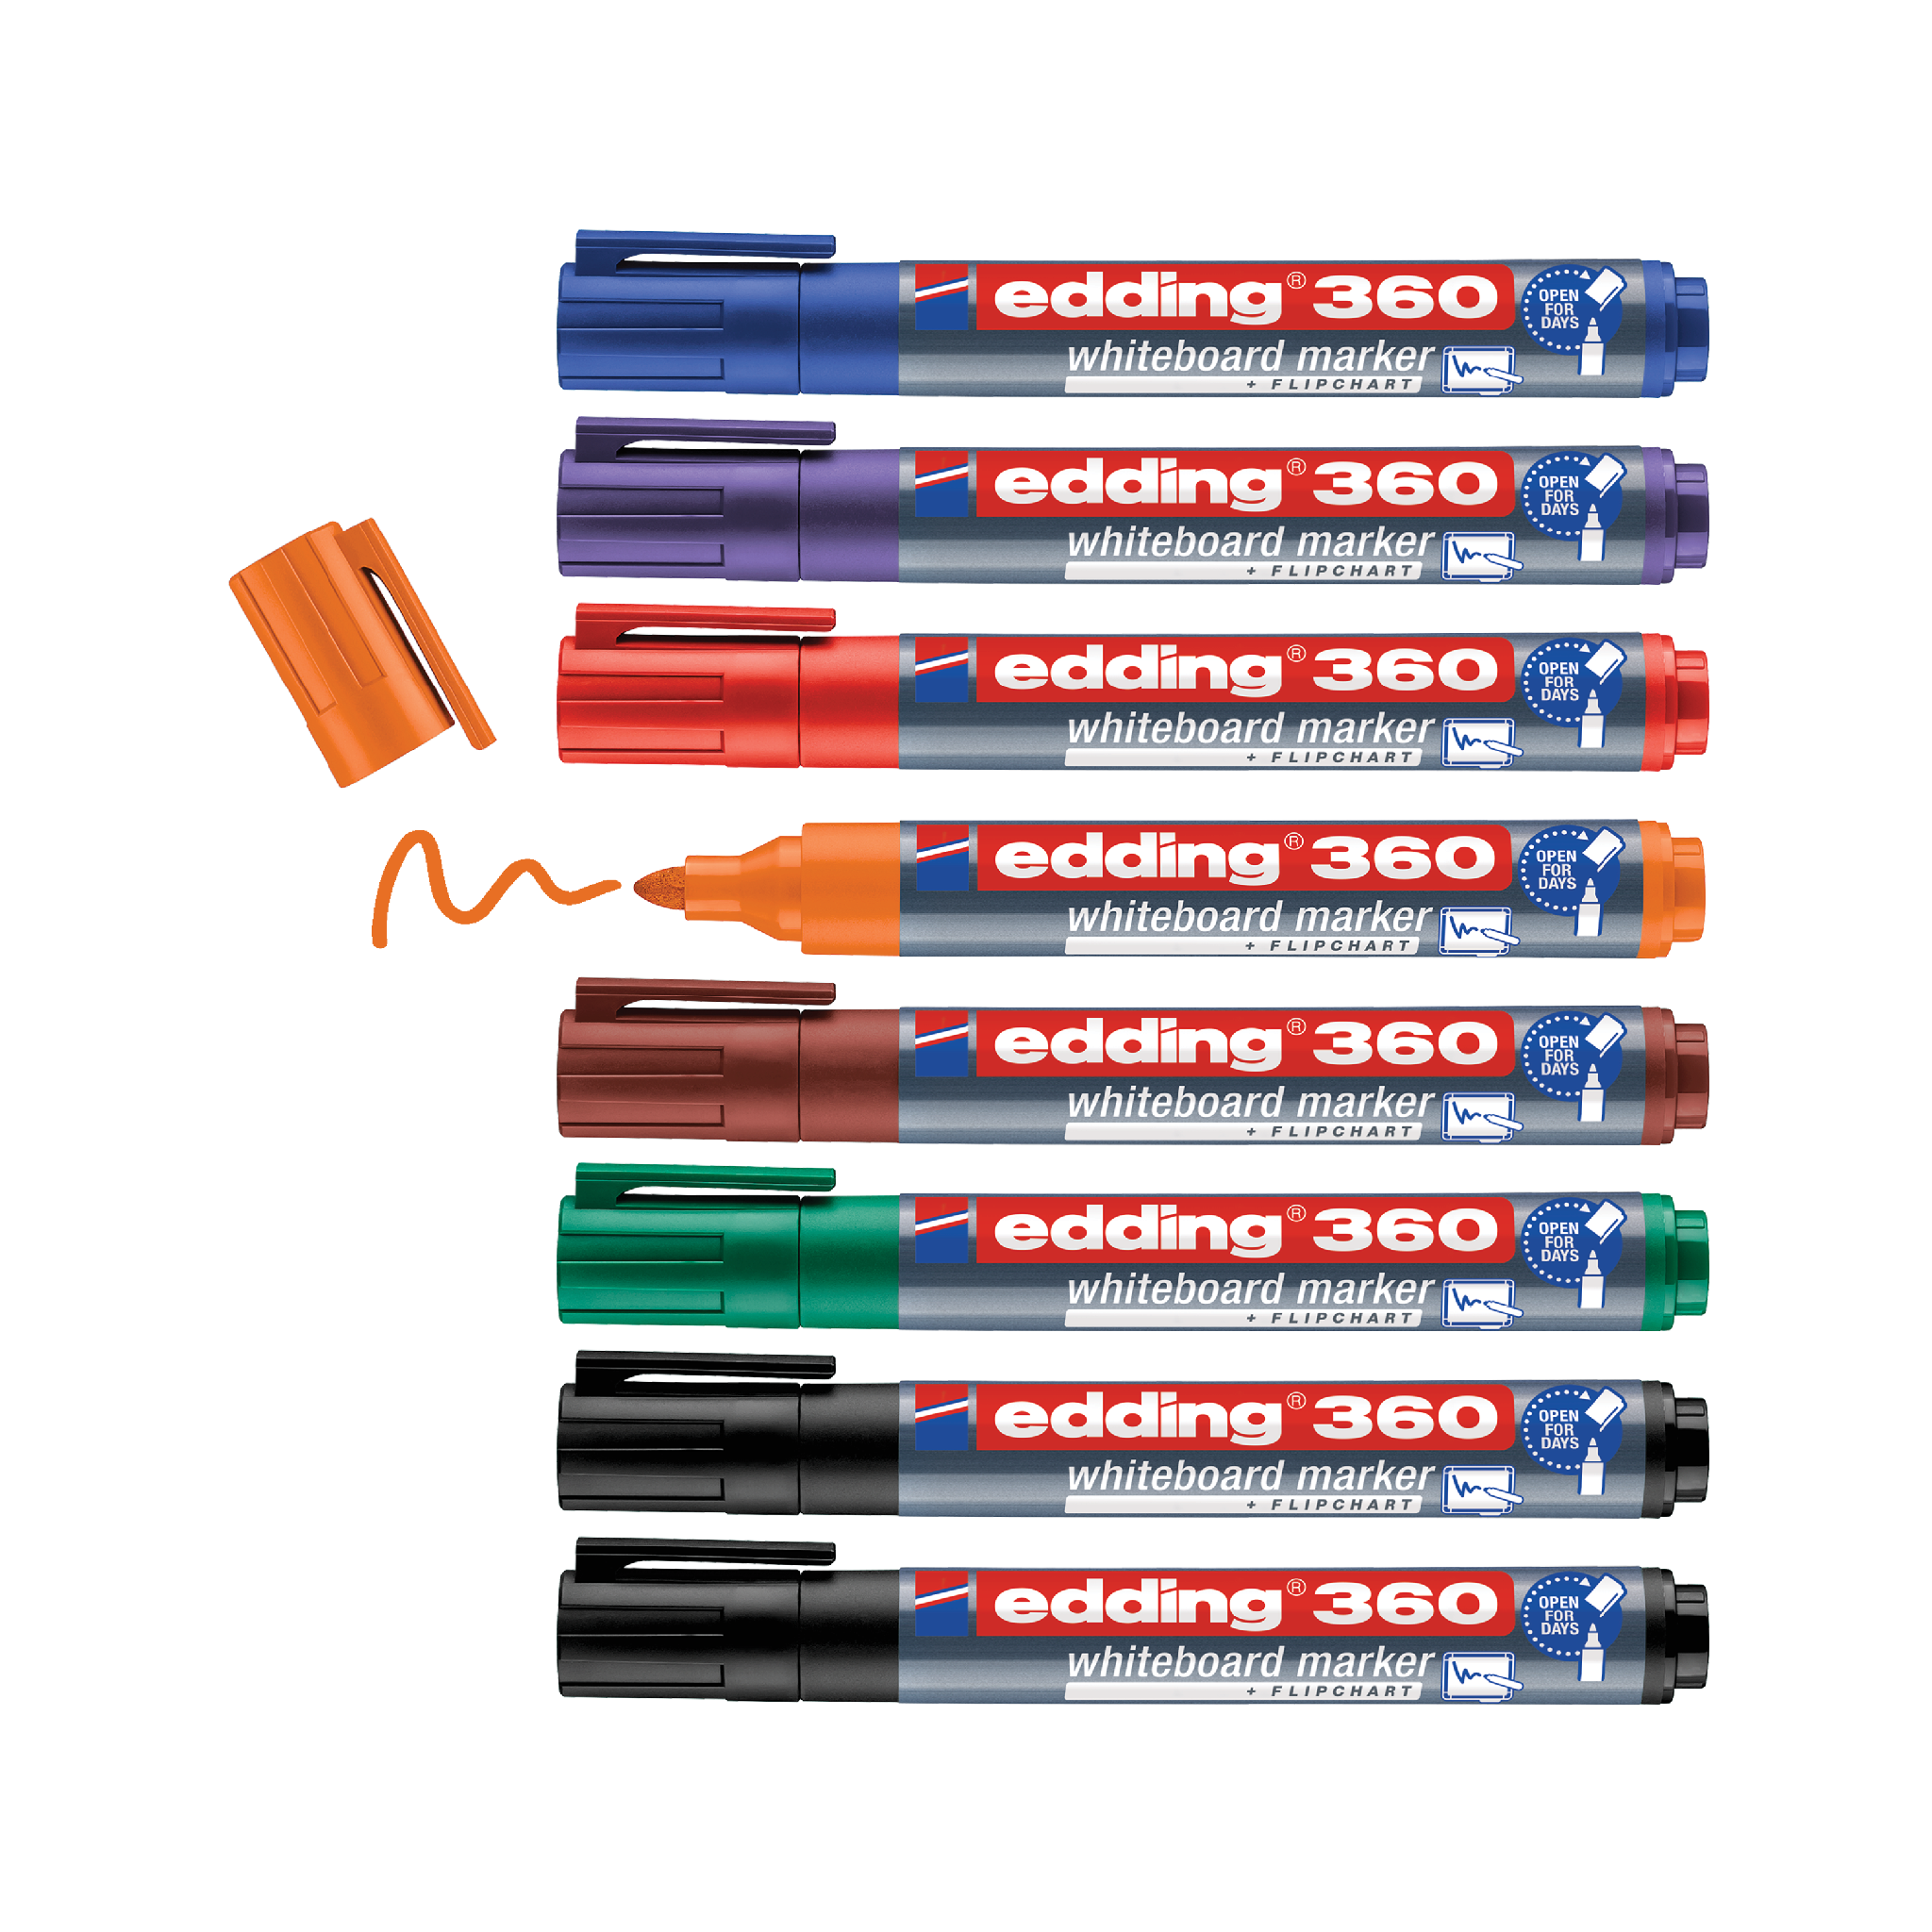 Eine Sammlung von edding 360 Whiteboardmarker-8er-Sets in Blau, Rot, Grün und Schwarz, sauber ausgerichtet, ohne Kappen und mit einem Kringel, der mit dem orangefarbenen Marker gezeichnet wurde. Jeder Marker wird von edding hergestellt.